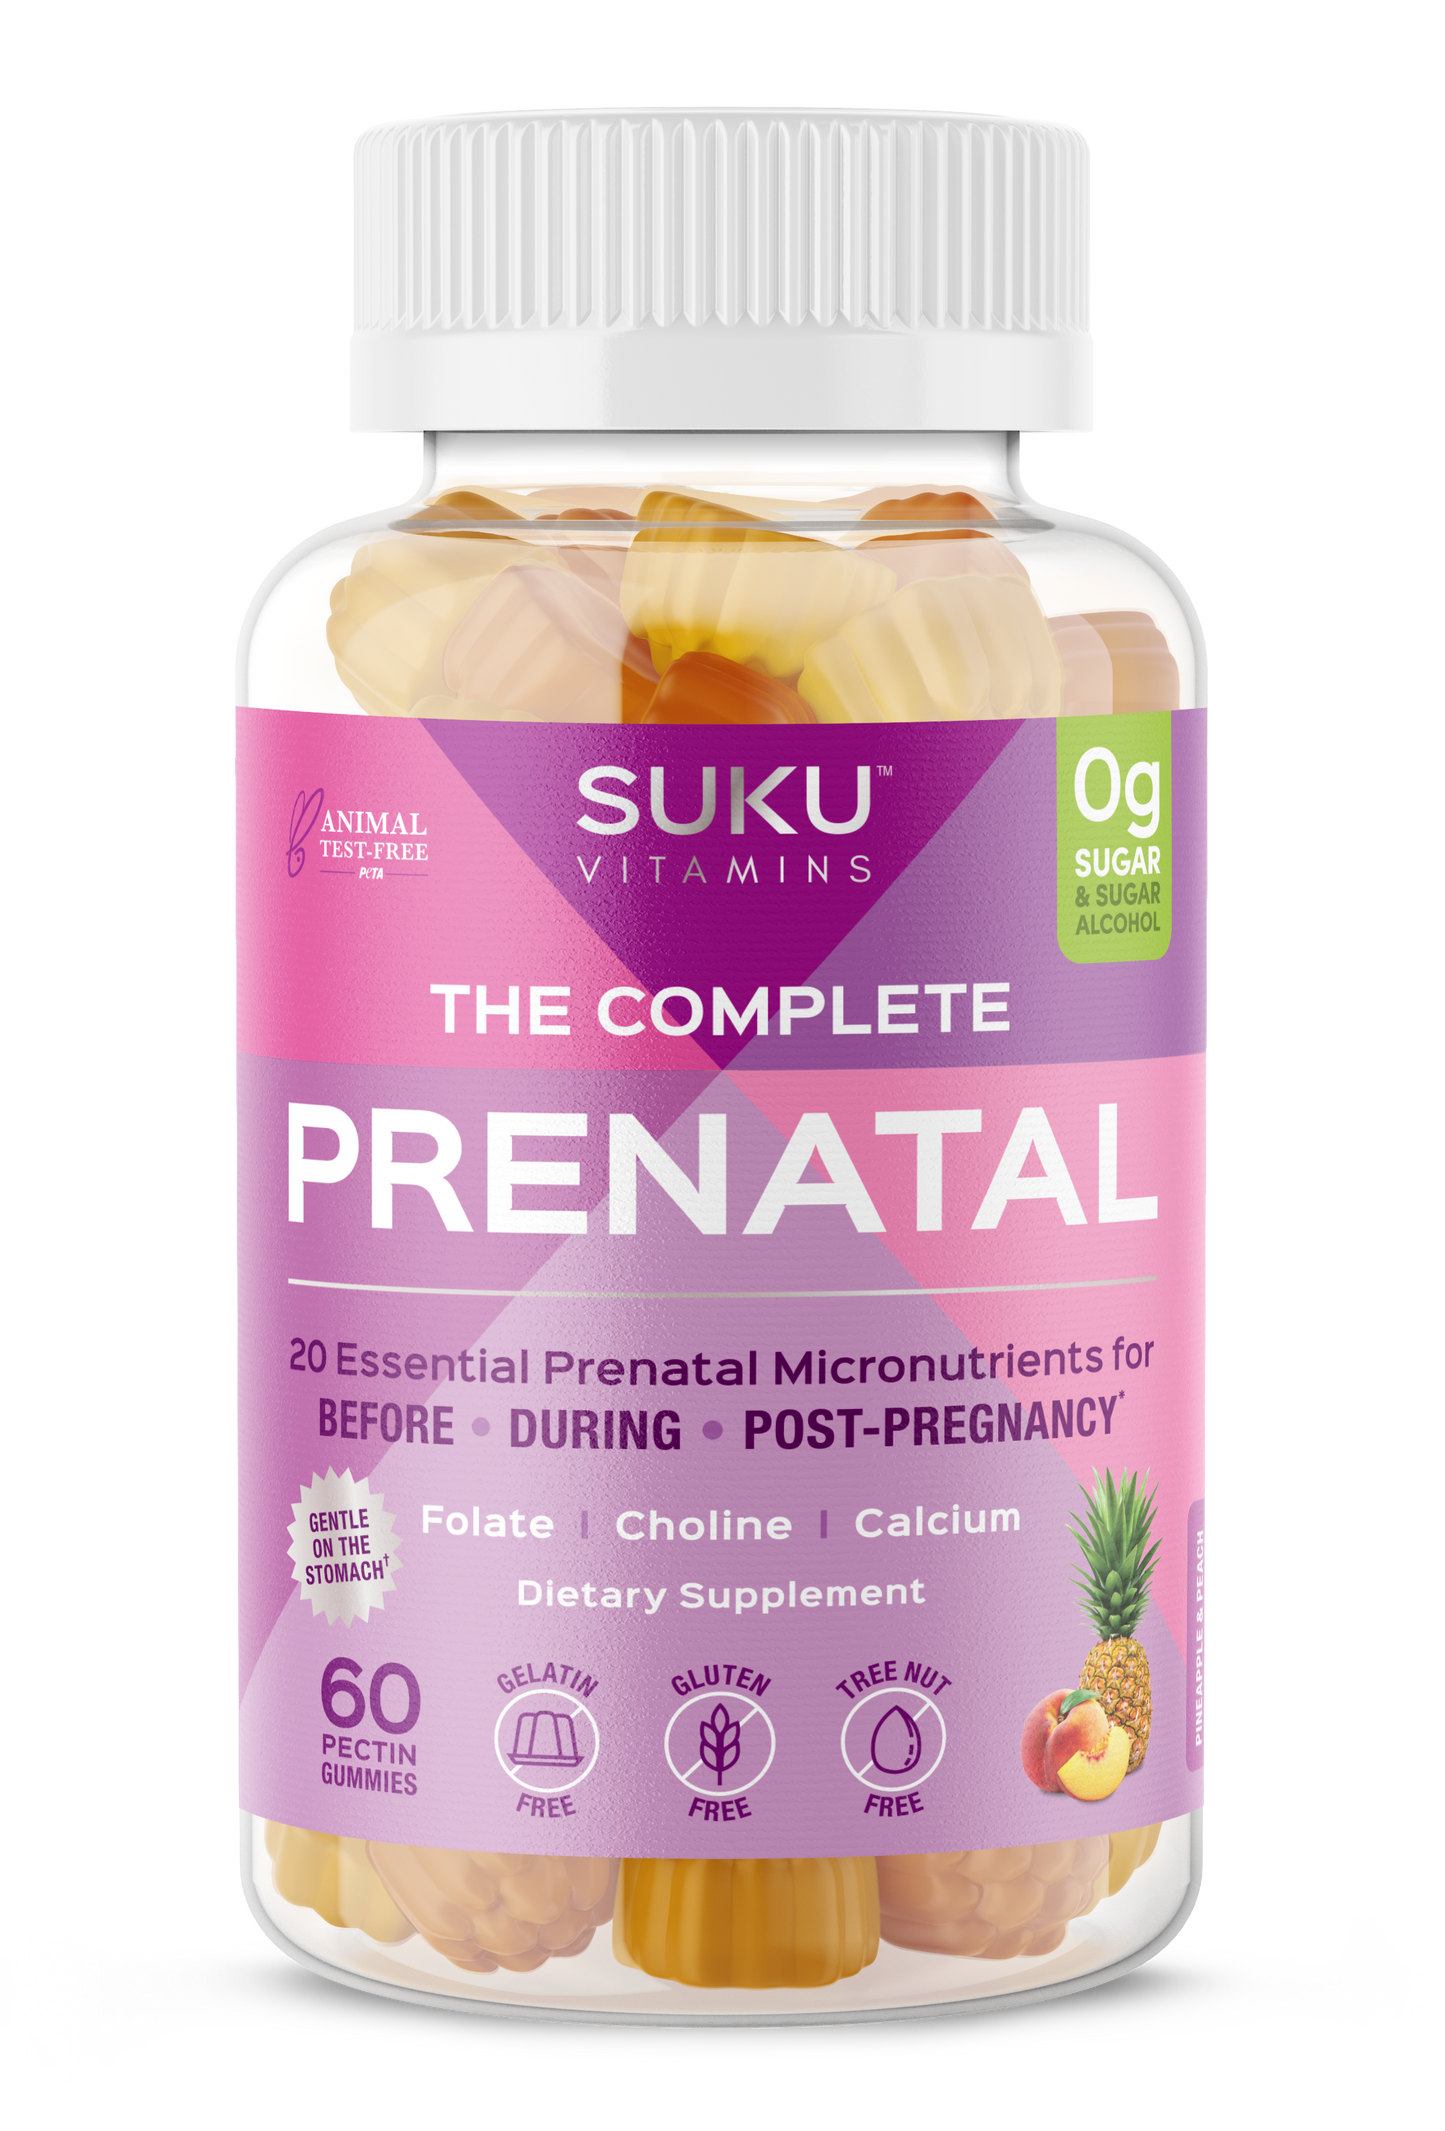 The Complete Prenatal